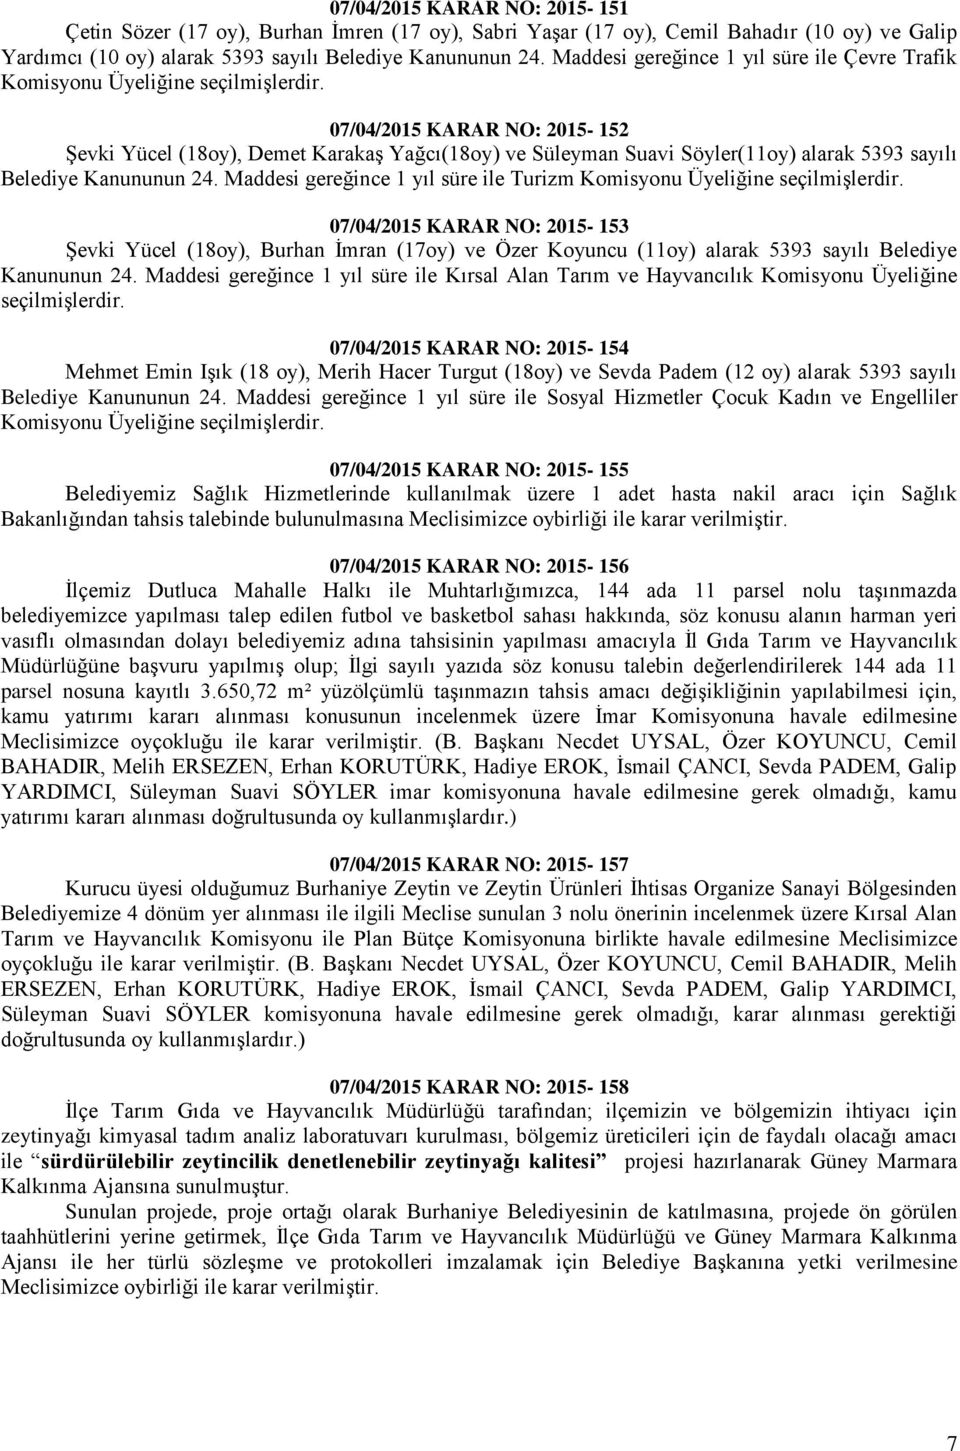 07/04/2015 KARAR NO: 2015-152 Şevki Yücel (18oy), Demet Karakaş Yağcı(18oy) ve Süleyman Suavi Söyler(11oy) alarak 5393 sayılı Belediye Kanununun 24.